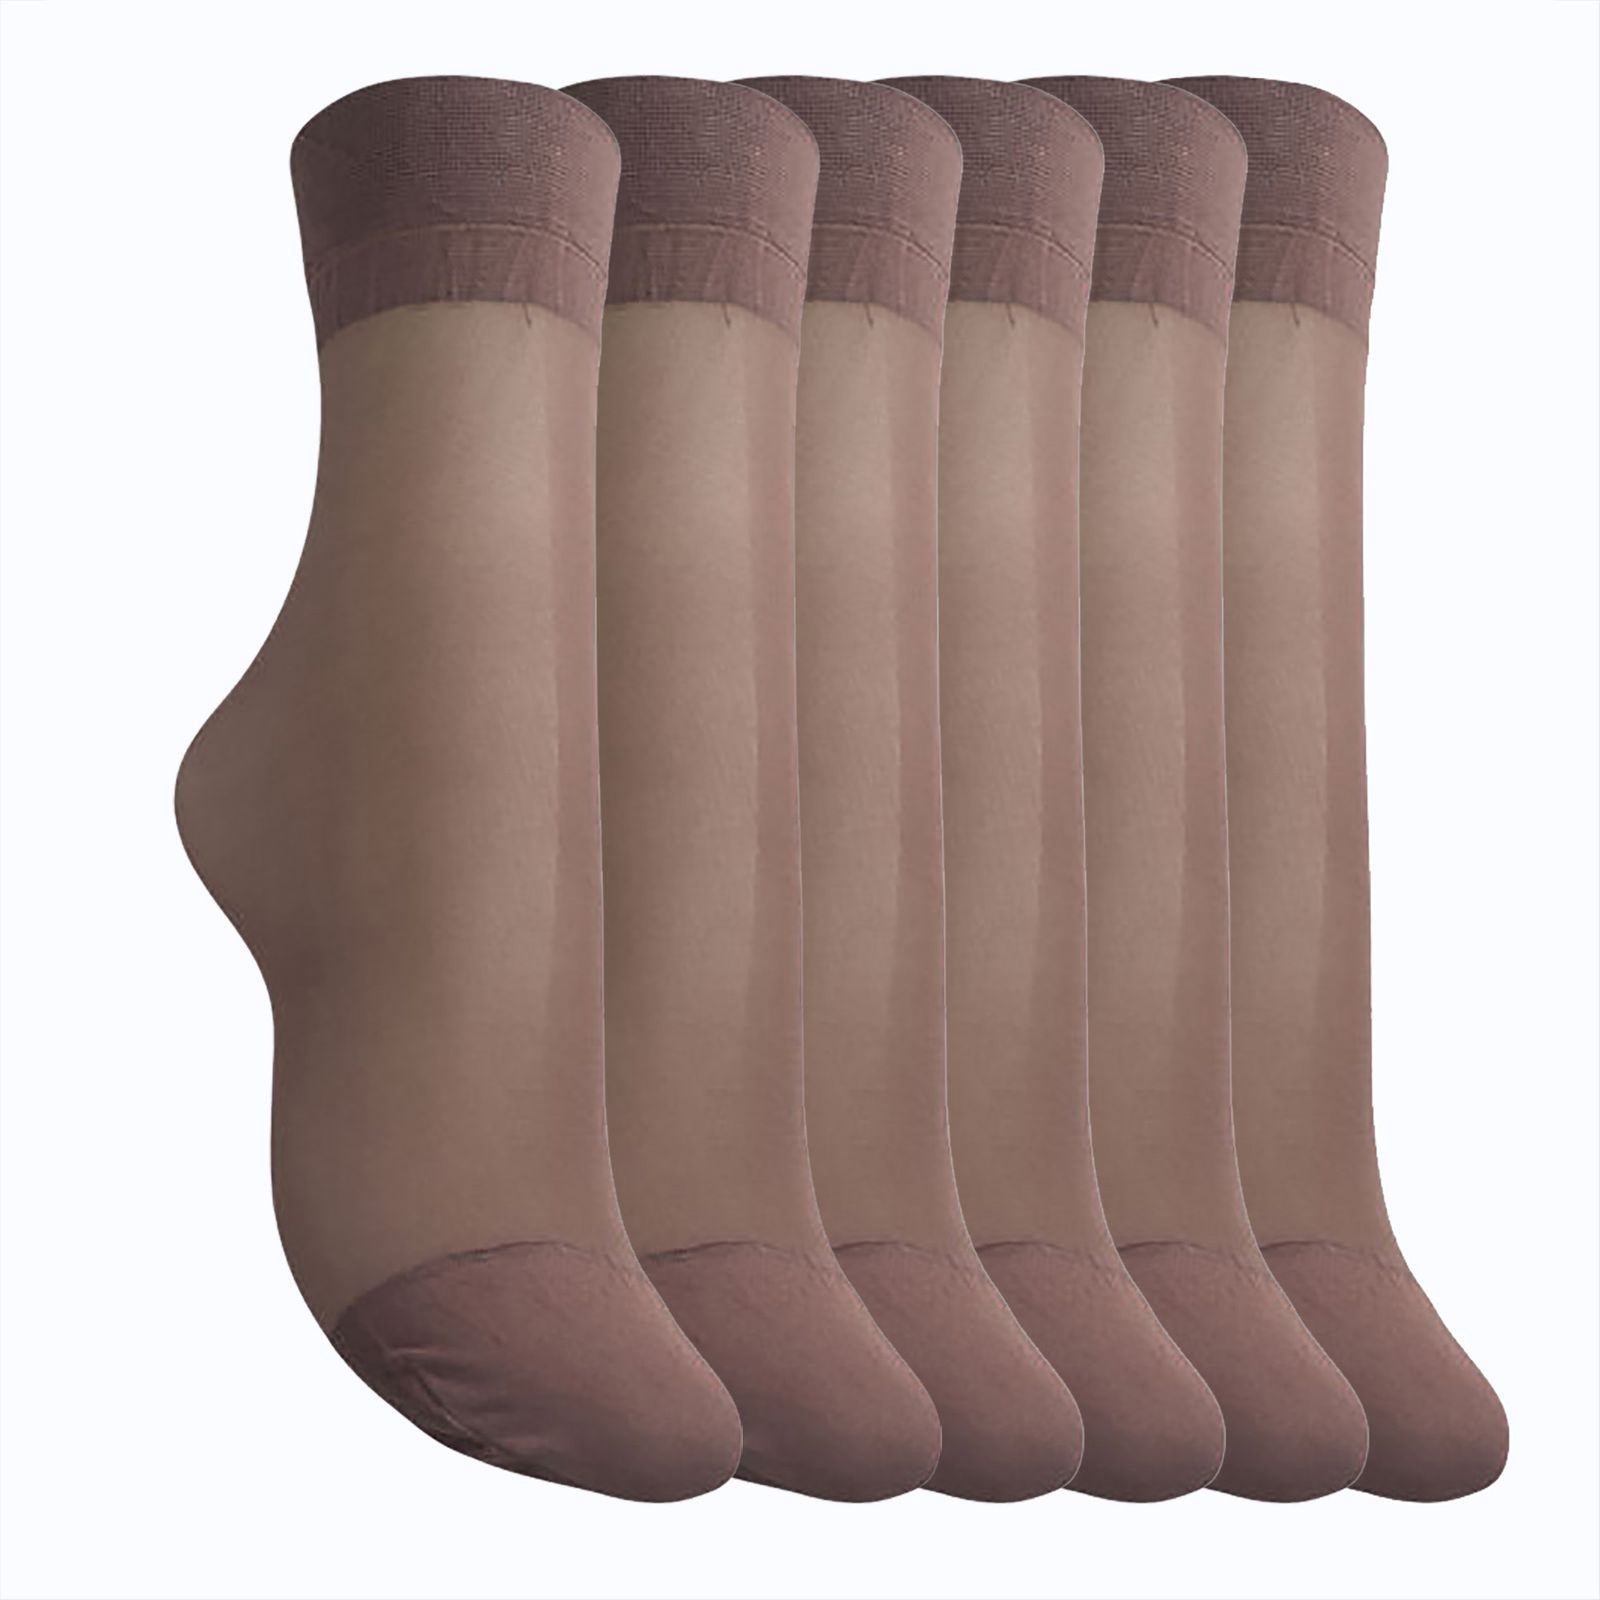 جوراب زنانه نارپام مدل پارازین رنگ قهوای بسته 6 عددی -  - 1